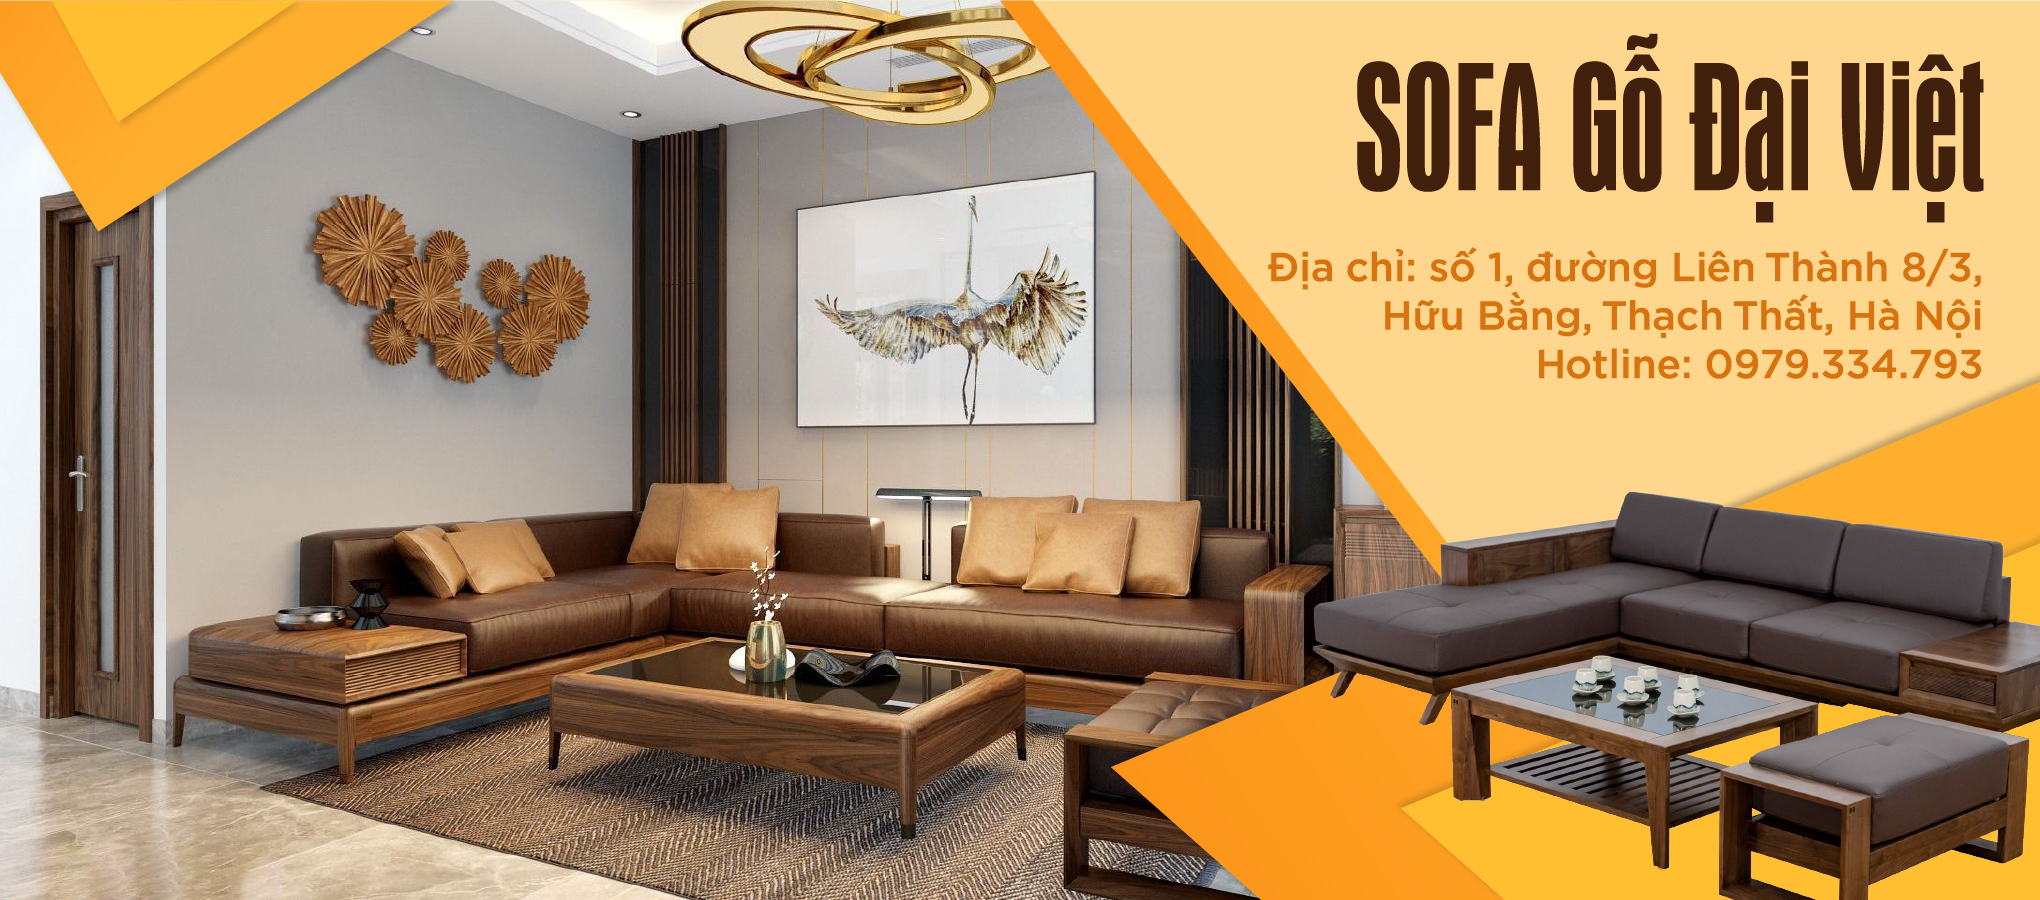 Sofa Gỗ Đại Việt cung cấp nội thất gỗ hương xám, sofa gỗ hương xám đẹp, giá rẻ và uy tín